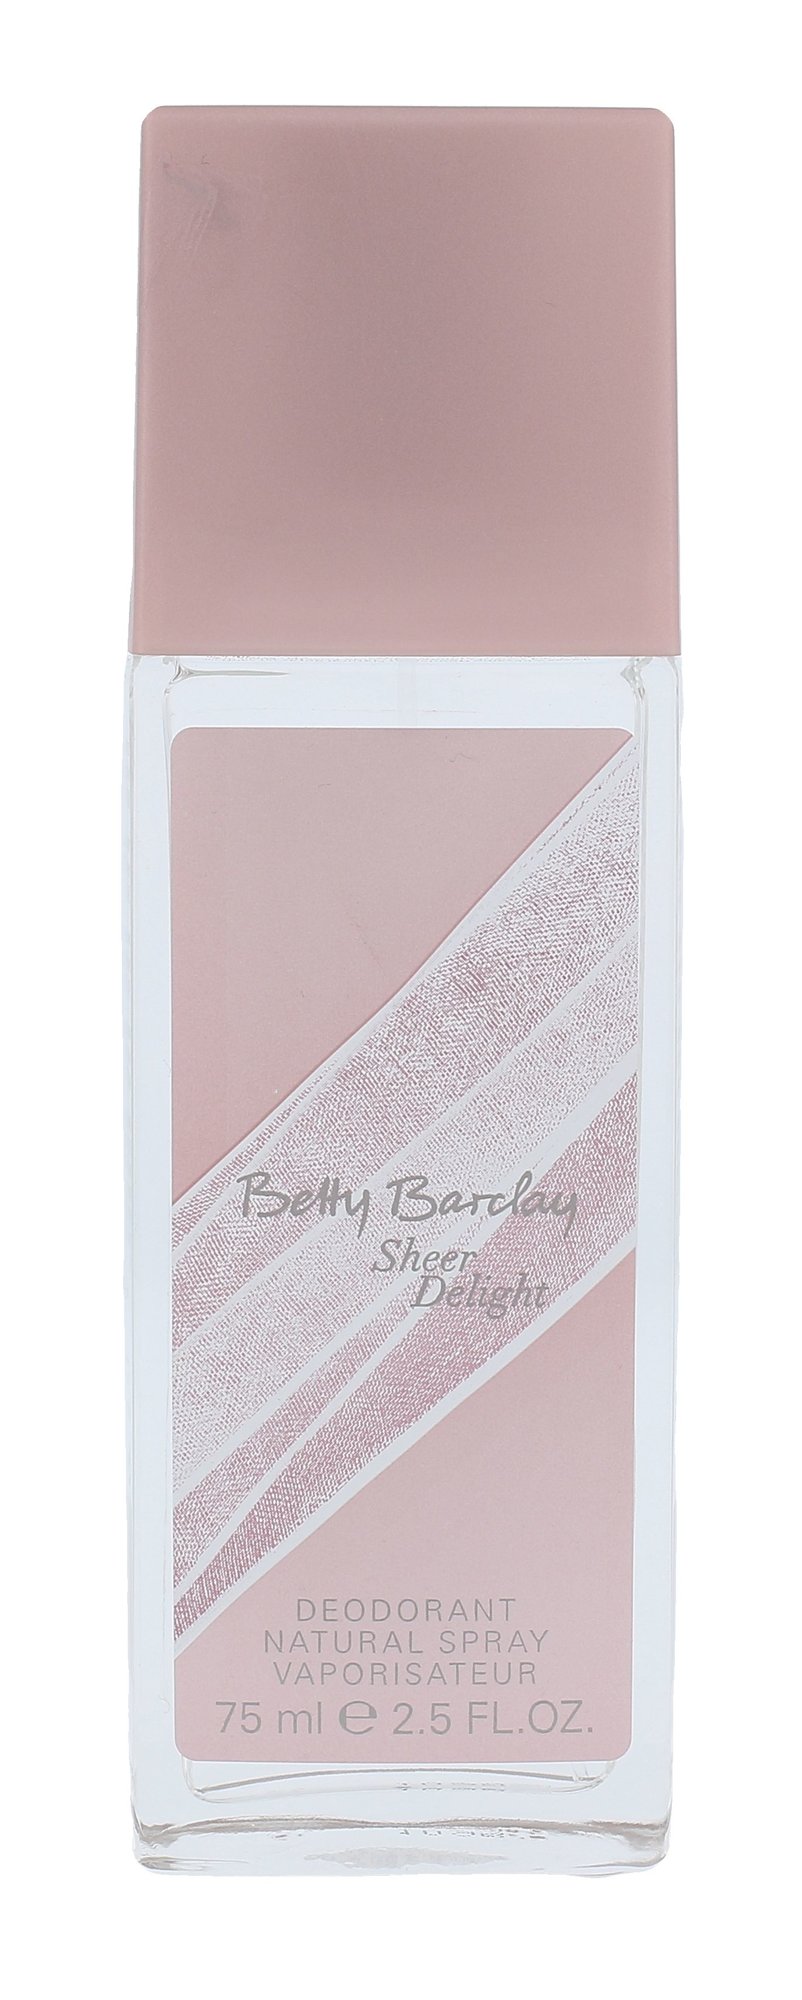 Betty Barclay Sheer Delight dezodorantas